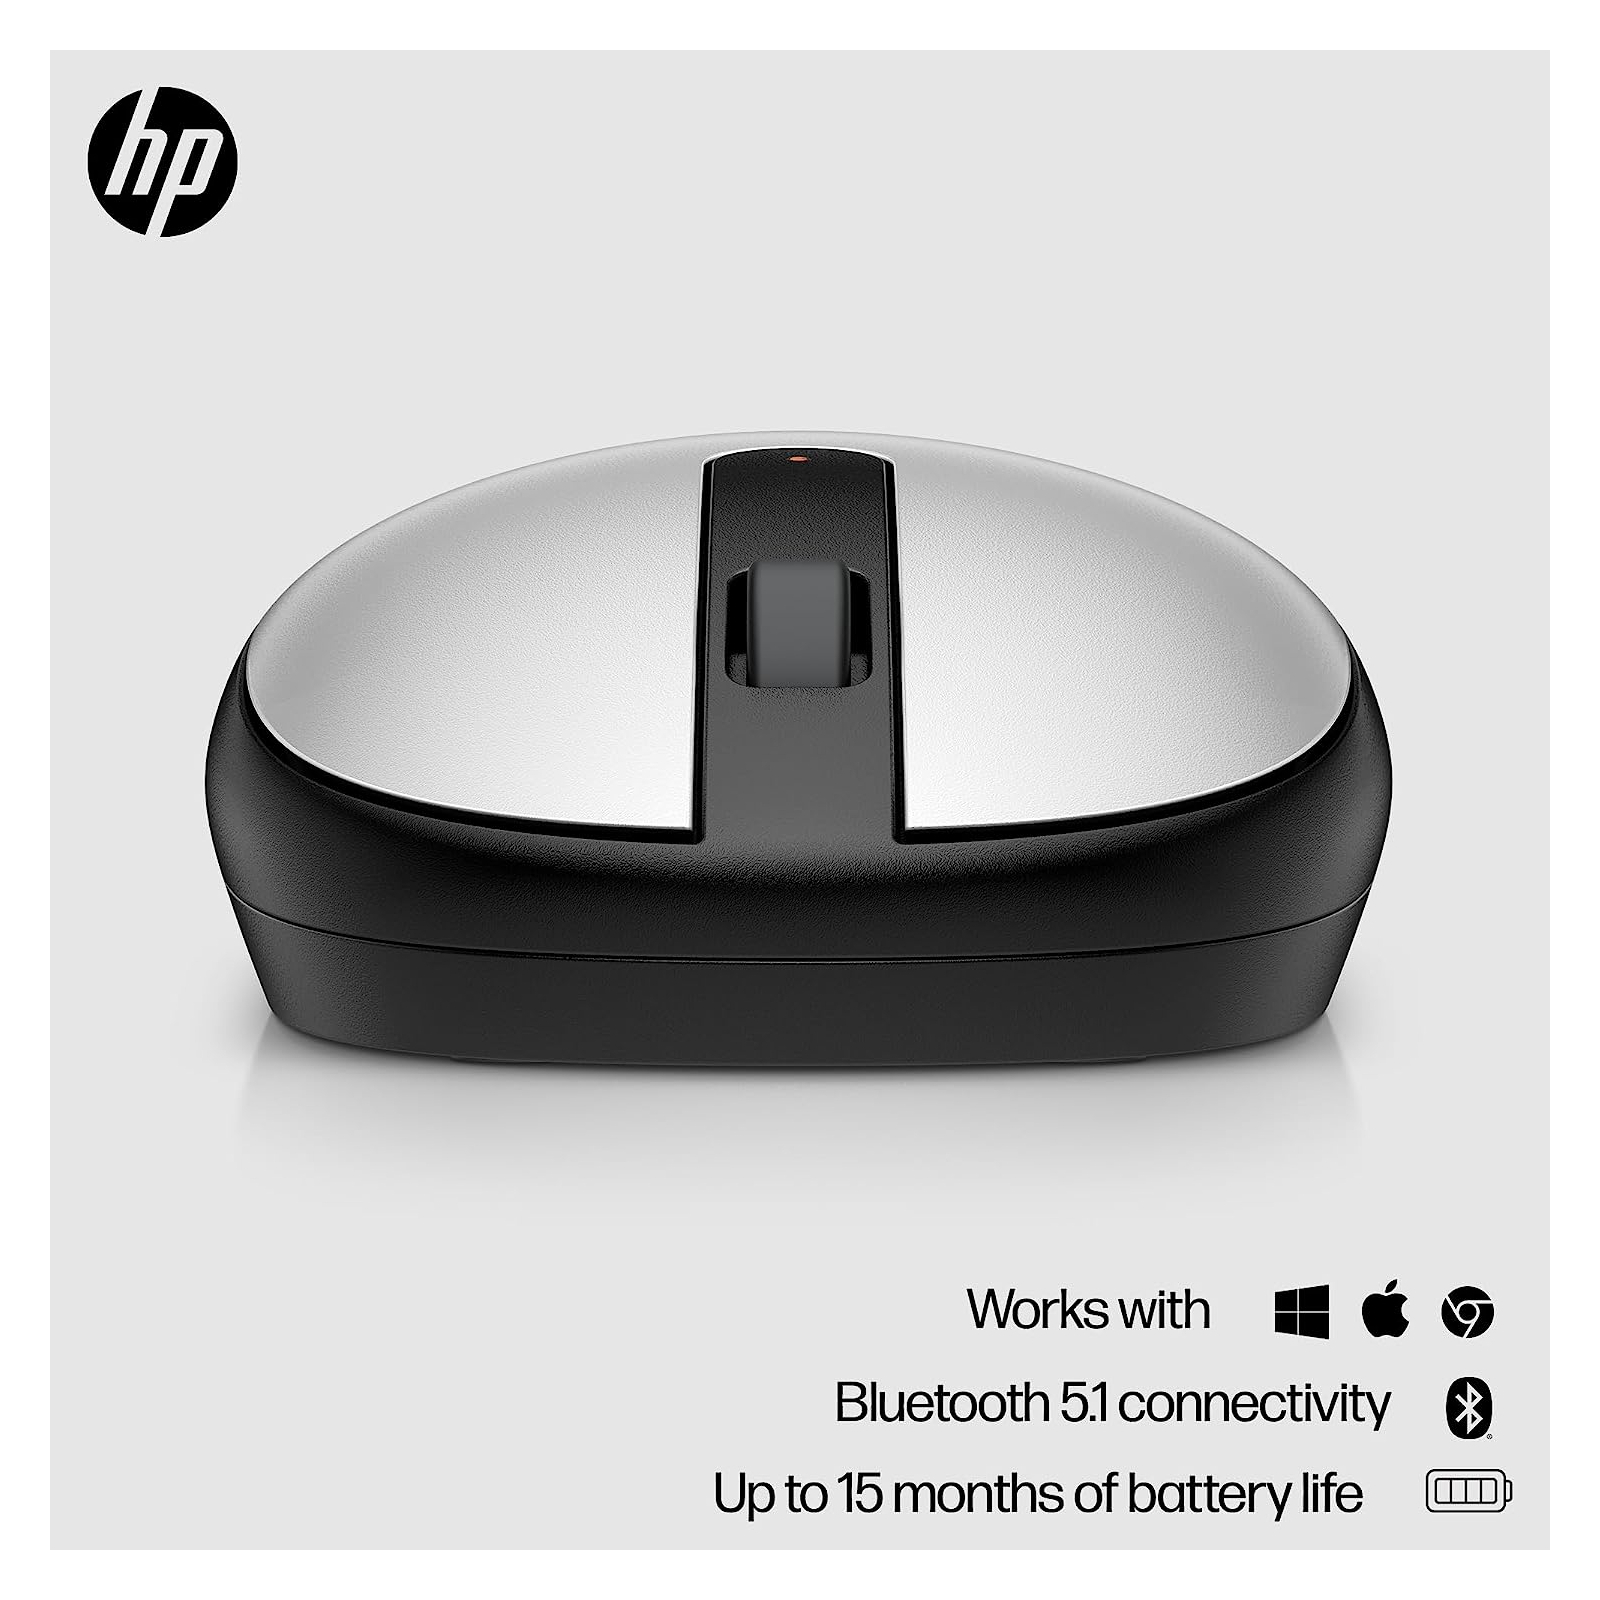 Мишка HP 240 Bluetooth White (793F9AA) зображення 2